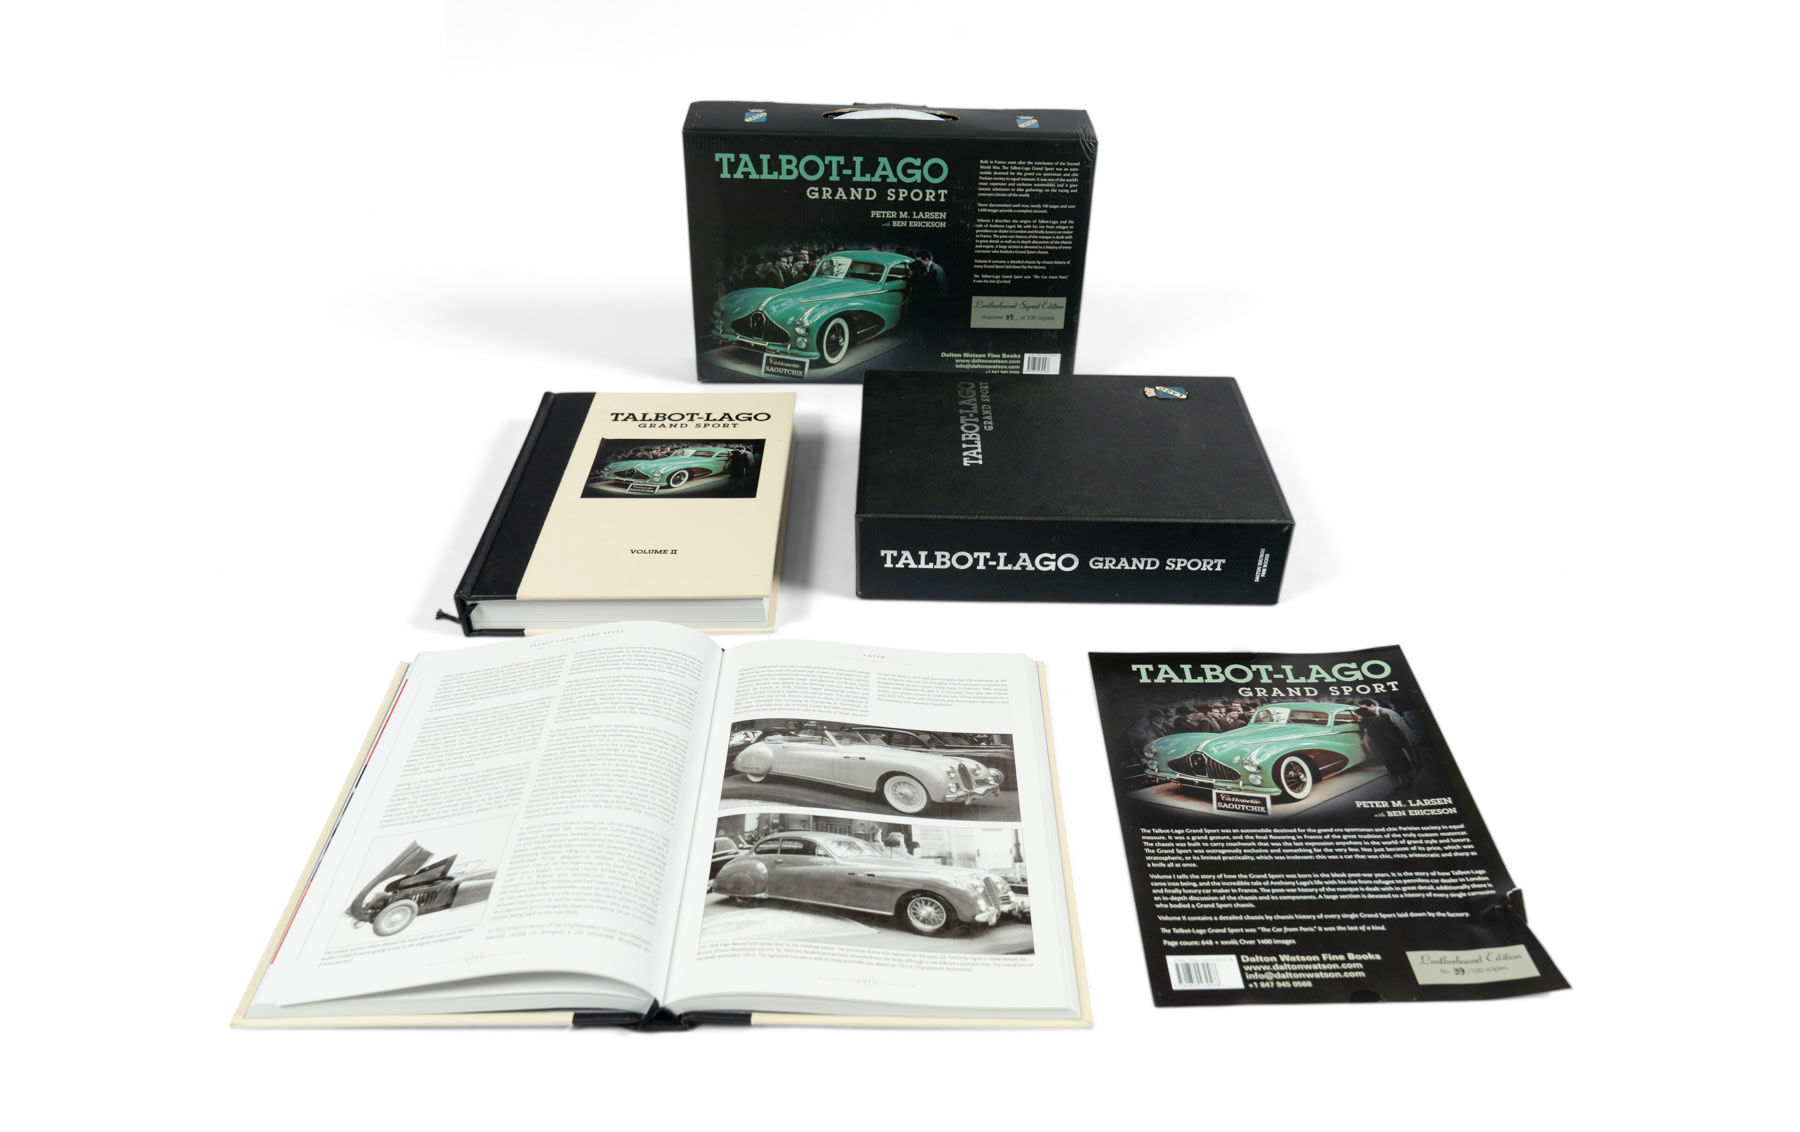 Talbot-Lago Grand Sport by Peter M. Larsen and Ben Erickson